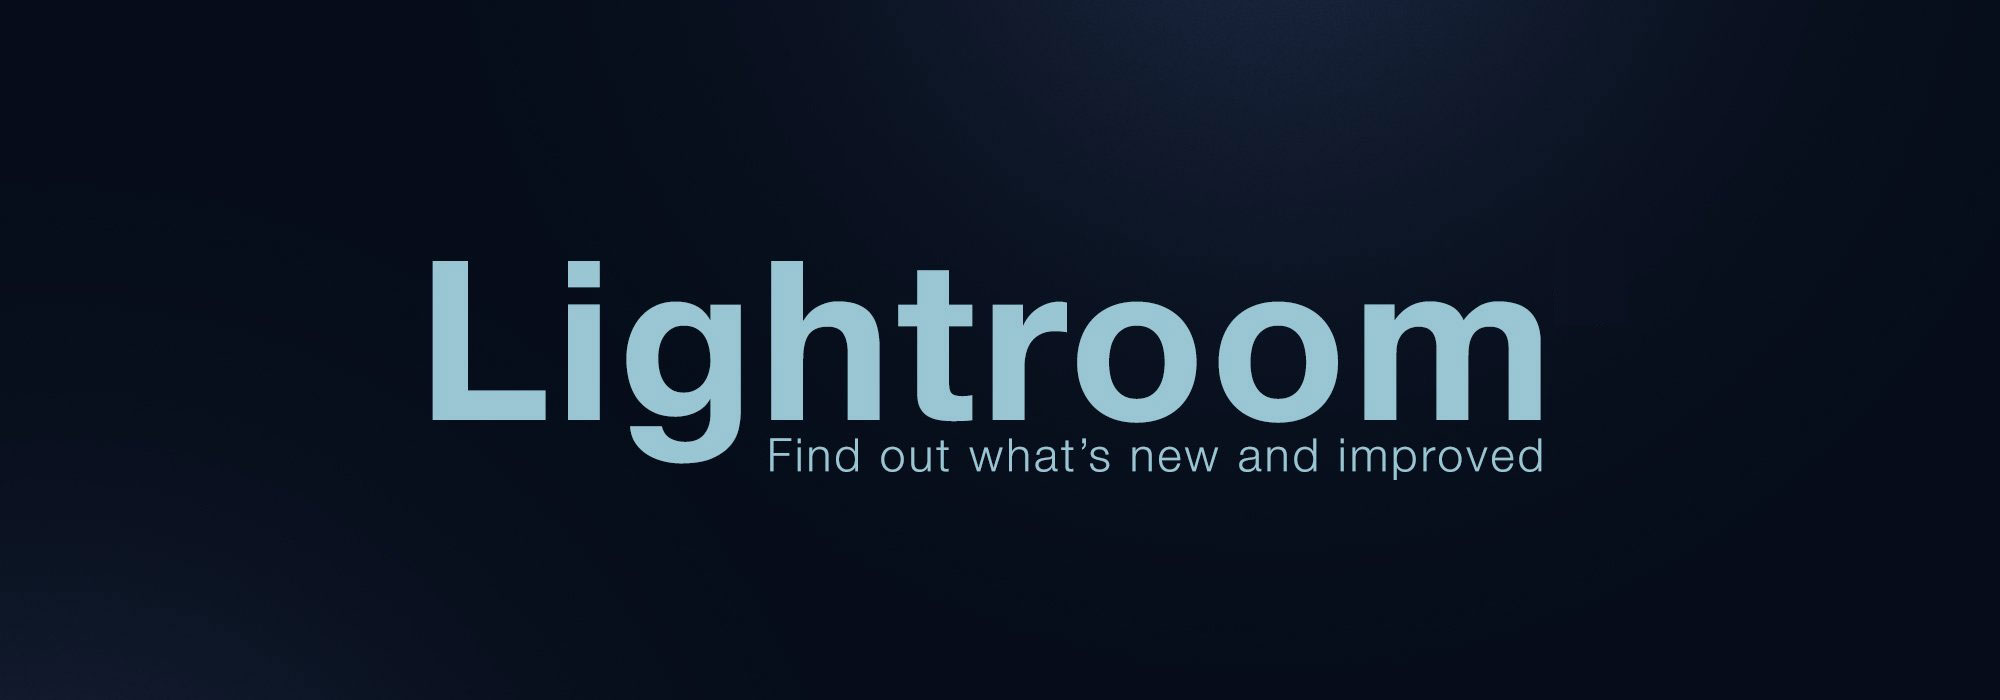 دانلود نرم افزار Adobe Photoshop Lightroom v2.5.0 برای آيفون،آيپد و آيپاد لمسی